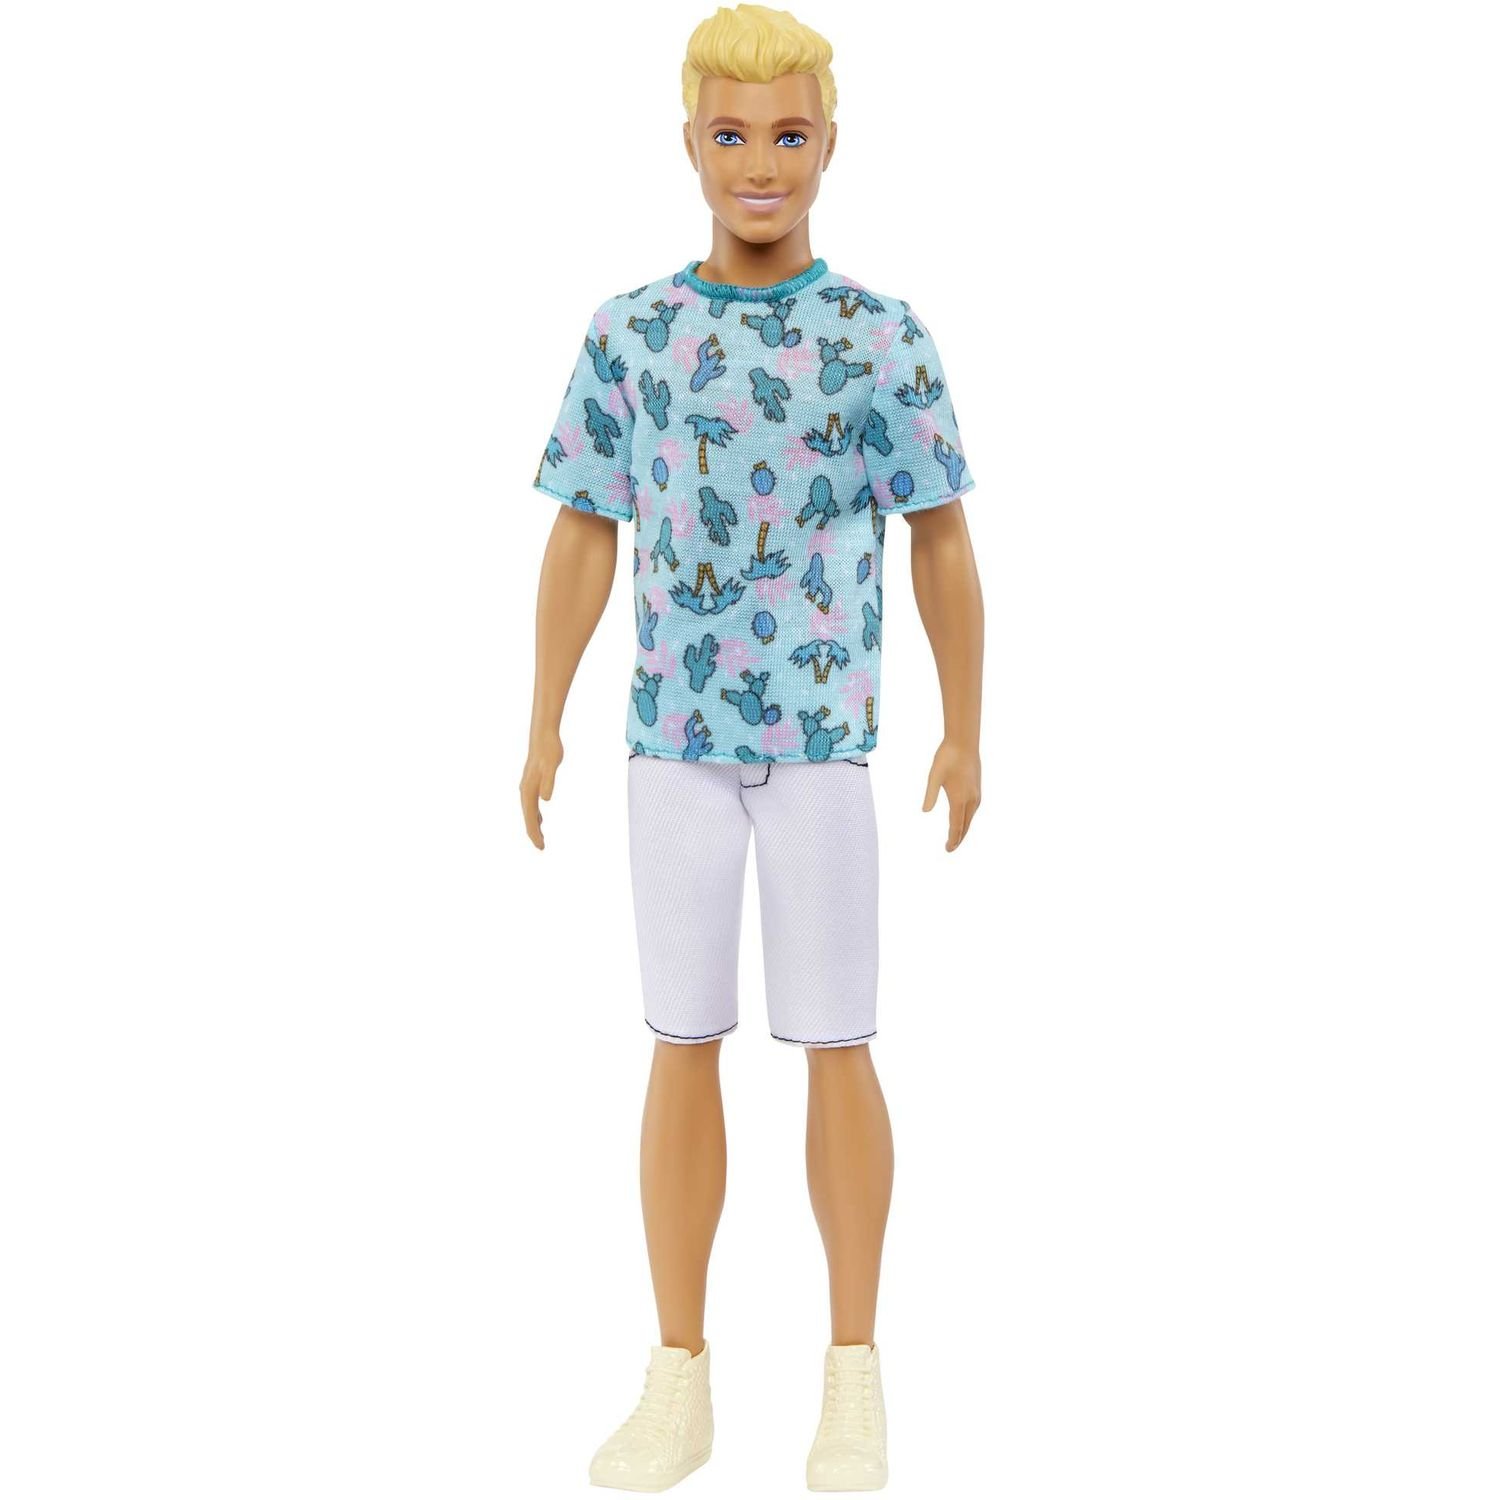 Кукла Barbie Кен Модник в футболке с кактусами, 31,5 см (HJT10) - фото 1